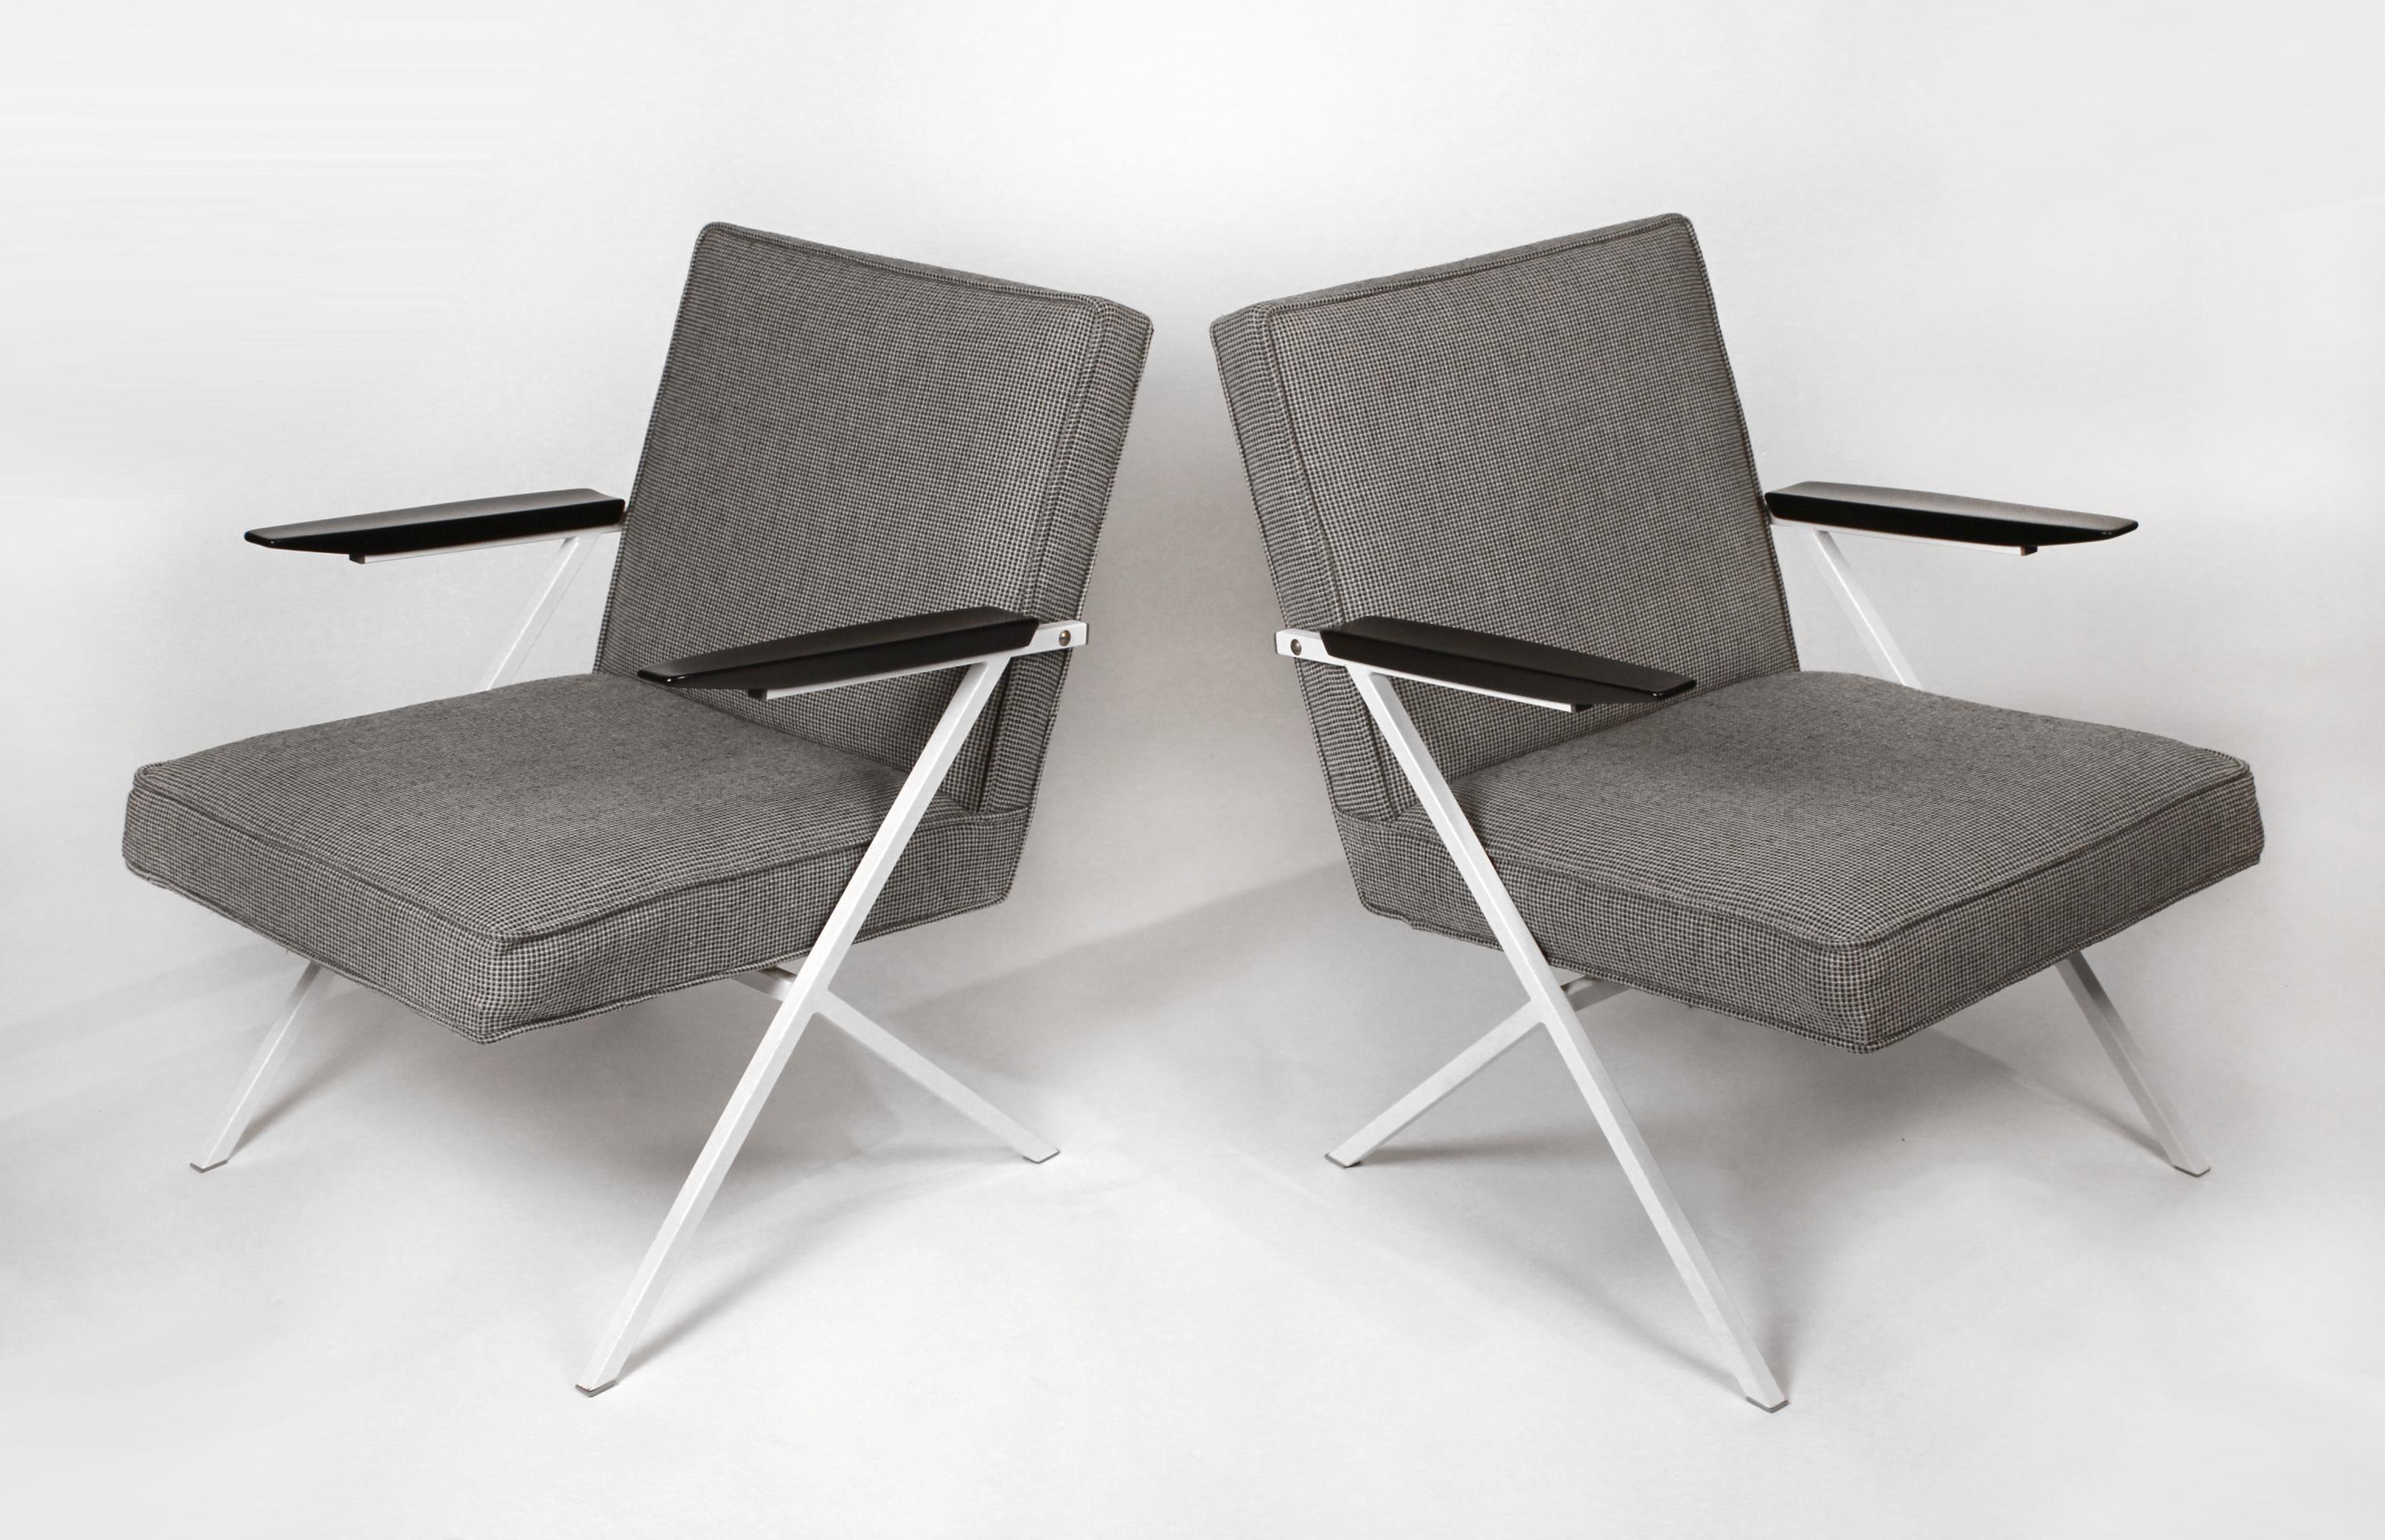 Seltenes Paar Loungesessel, entworfen von dem tschechoslowakischen Architekten Ladislav Rado für Knoll und Drake im Jahr 1950. Modell R-83.

Die Rahmen sind neu lackiert worden. Die Knoll-Tweed-Polsterung ist komplett original.